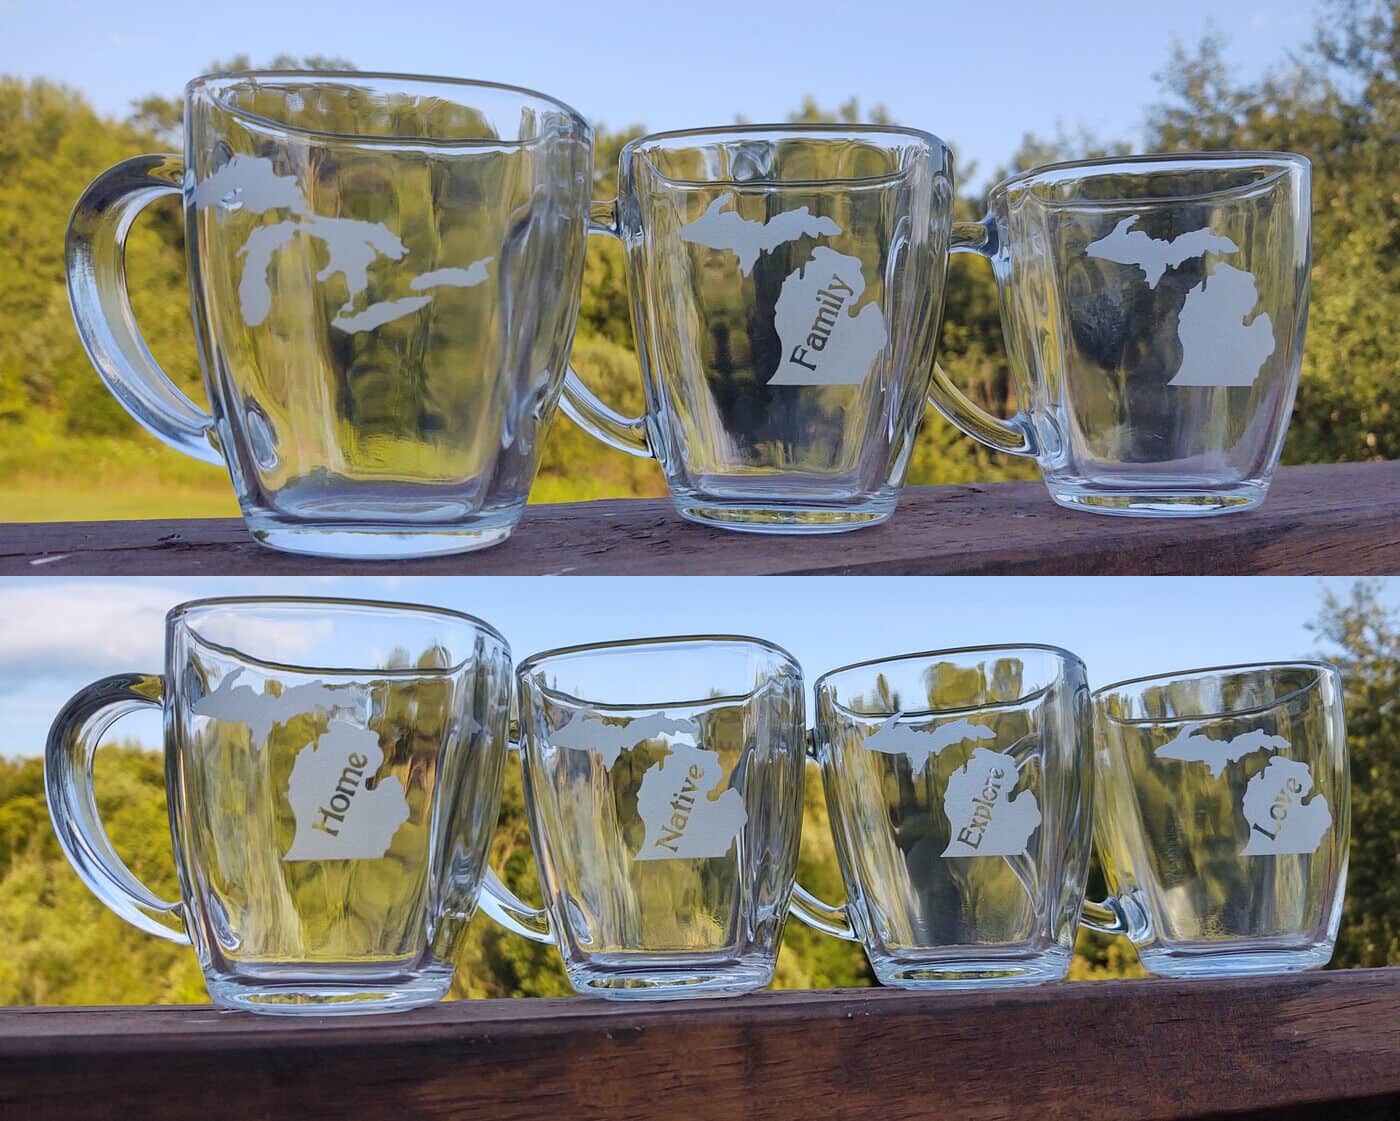 https://madeinmichigan.com/wp-content/uploads/2021/08/Michigan-Theme-Tapered-Glass-Coffee-Mug.jpg